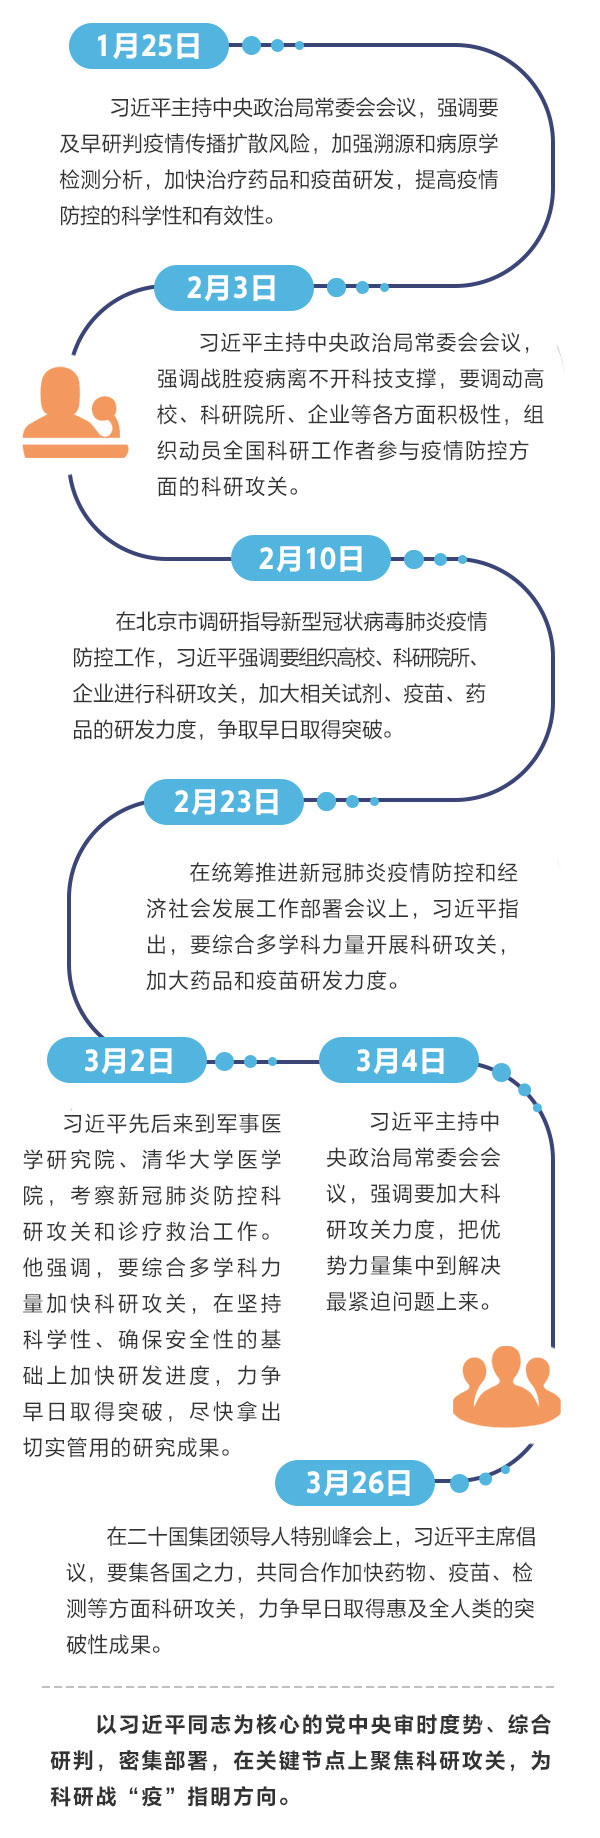 江苏省渔夫捞获10个海外水中窃取商业秘密设备